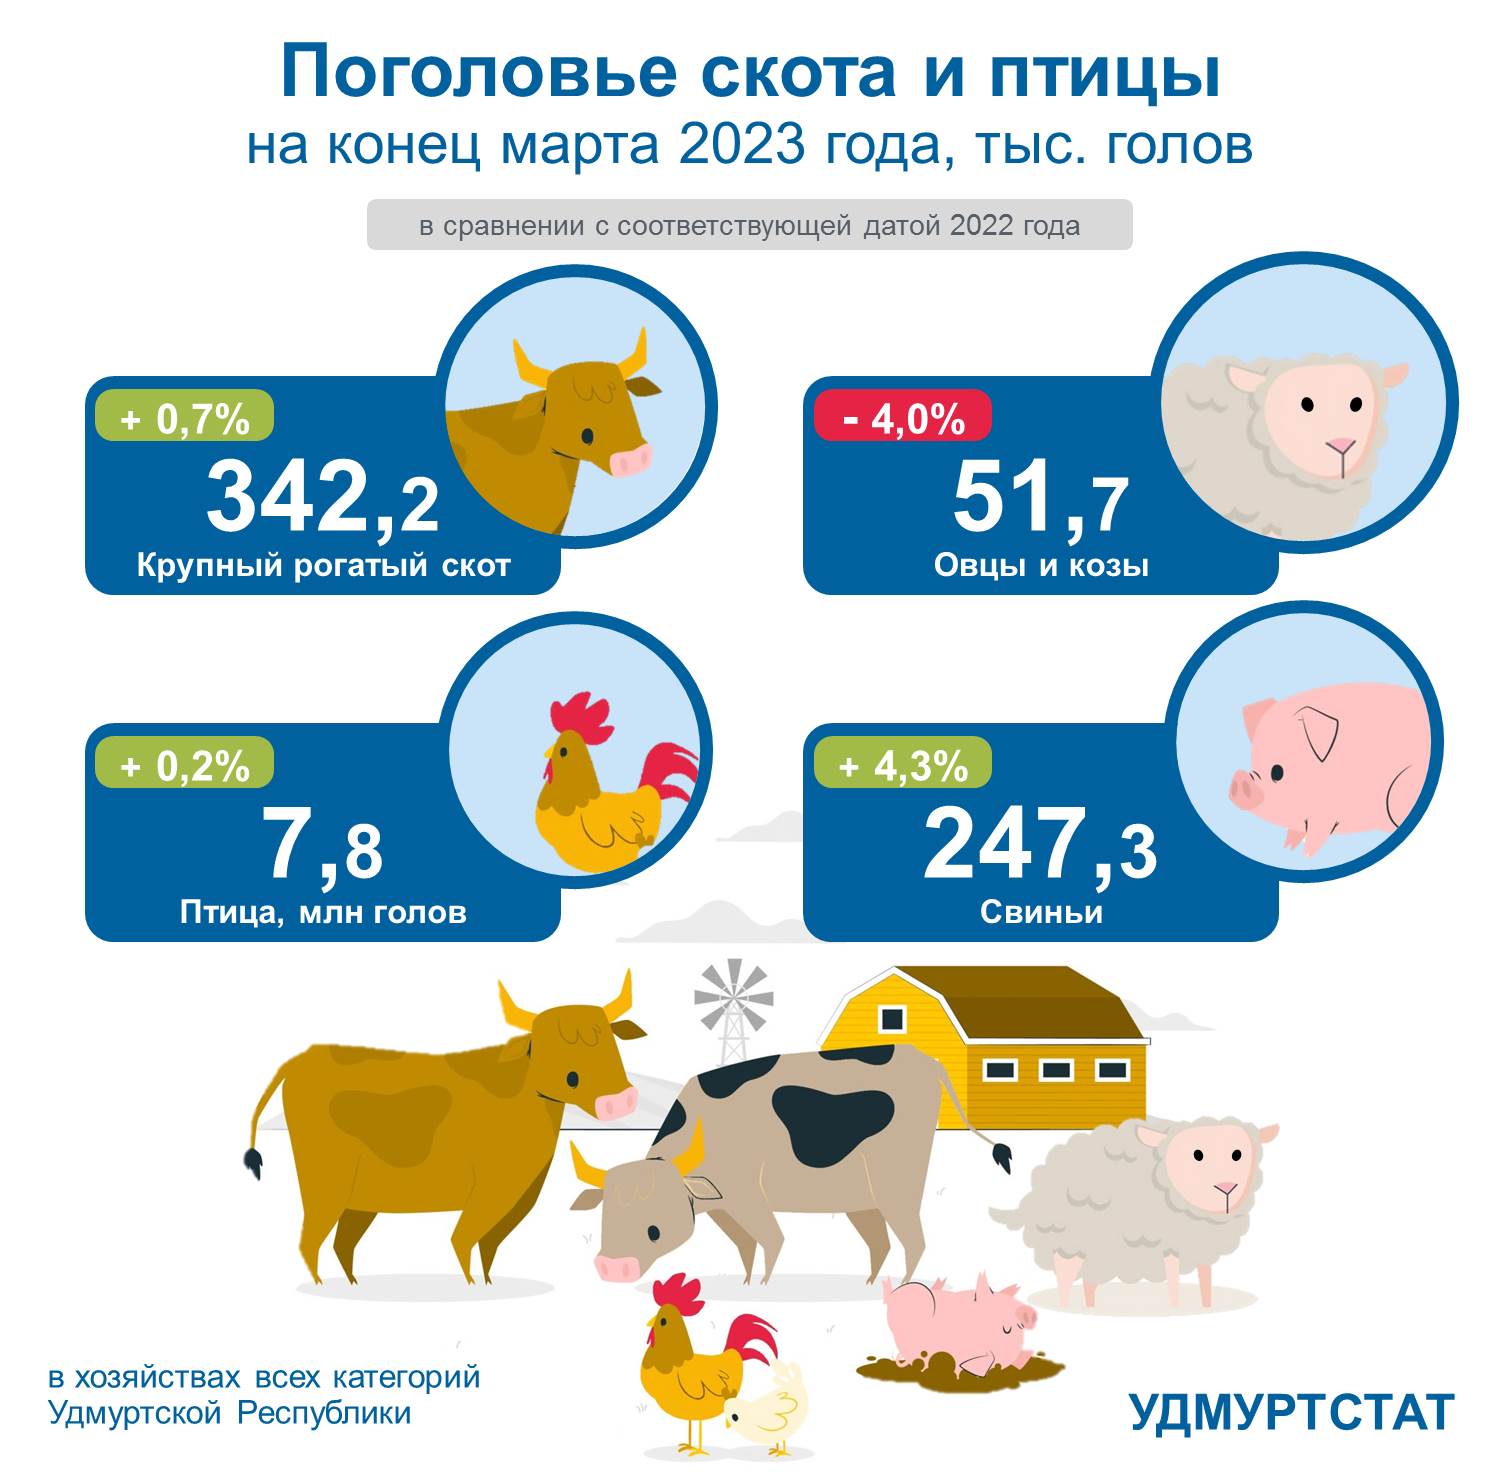 Поголовье скота и птицы на конец марта 2023 года.